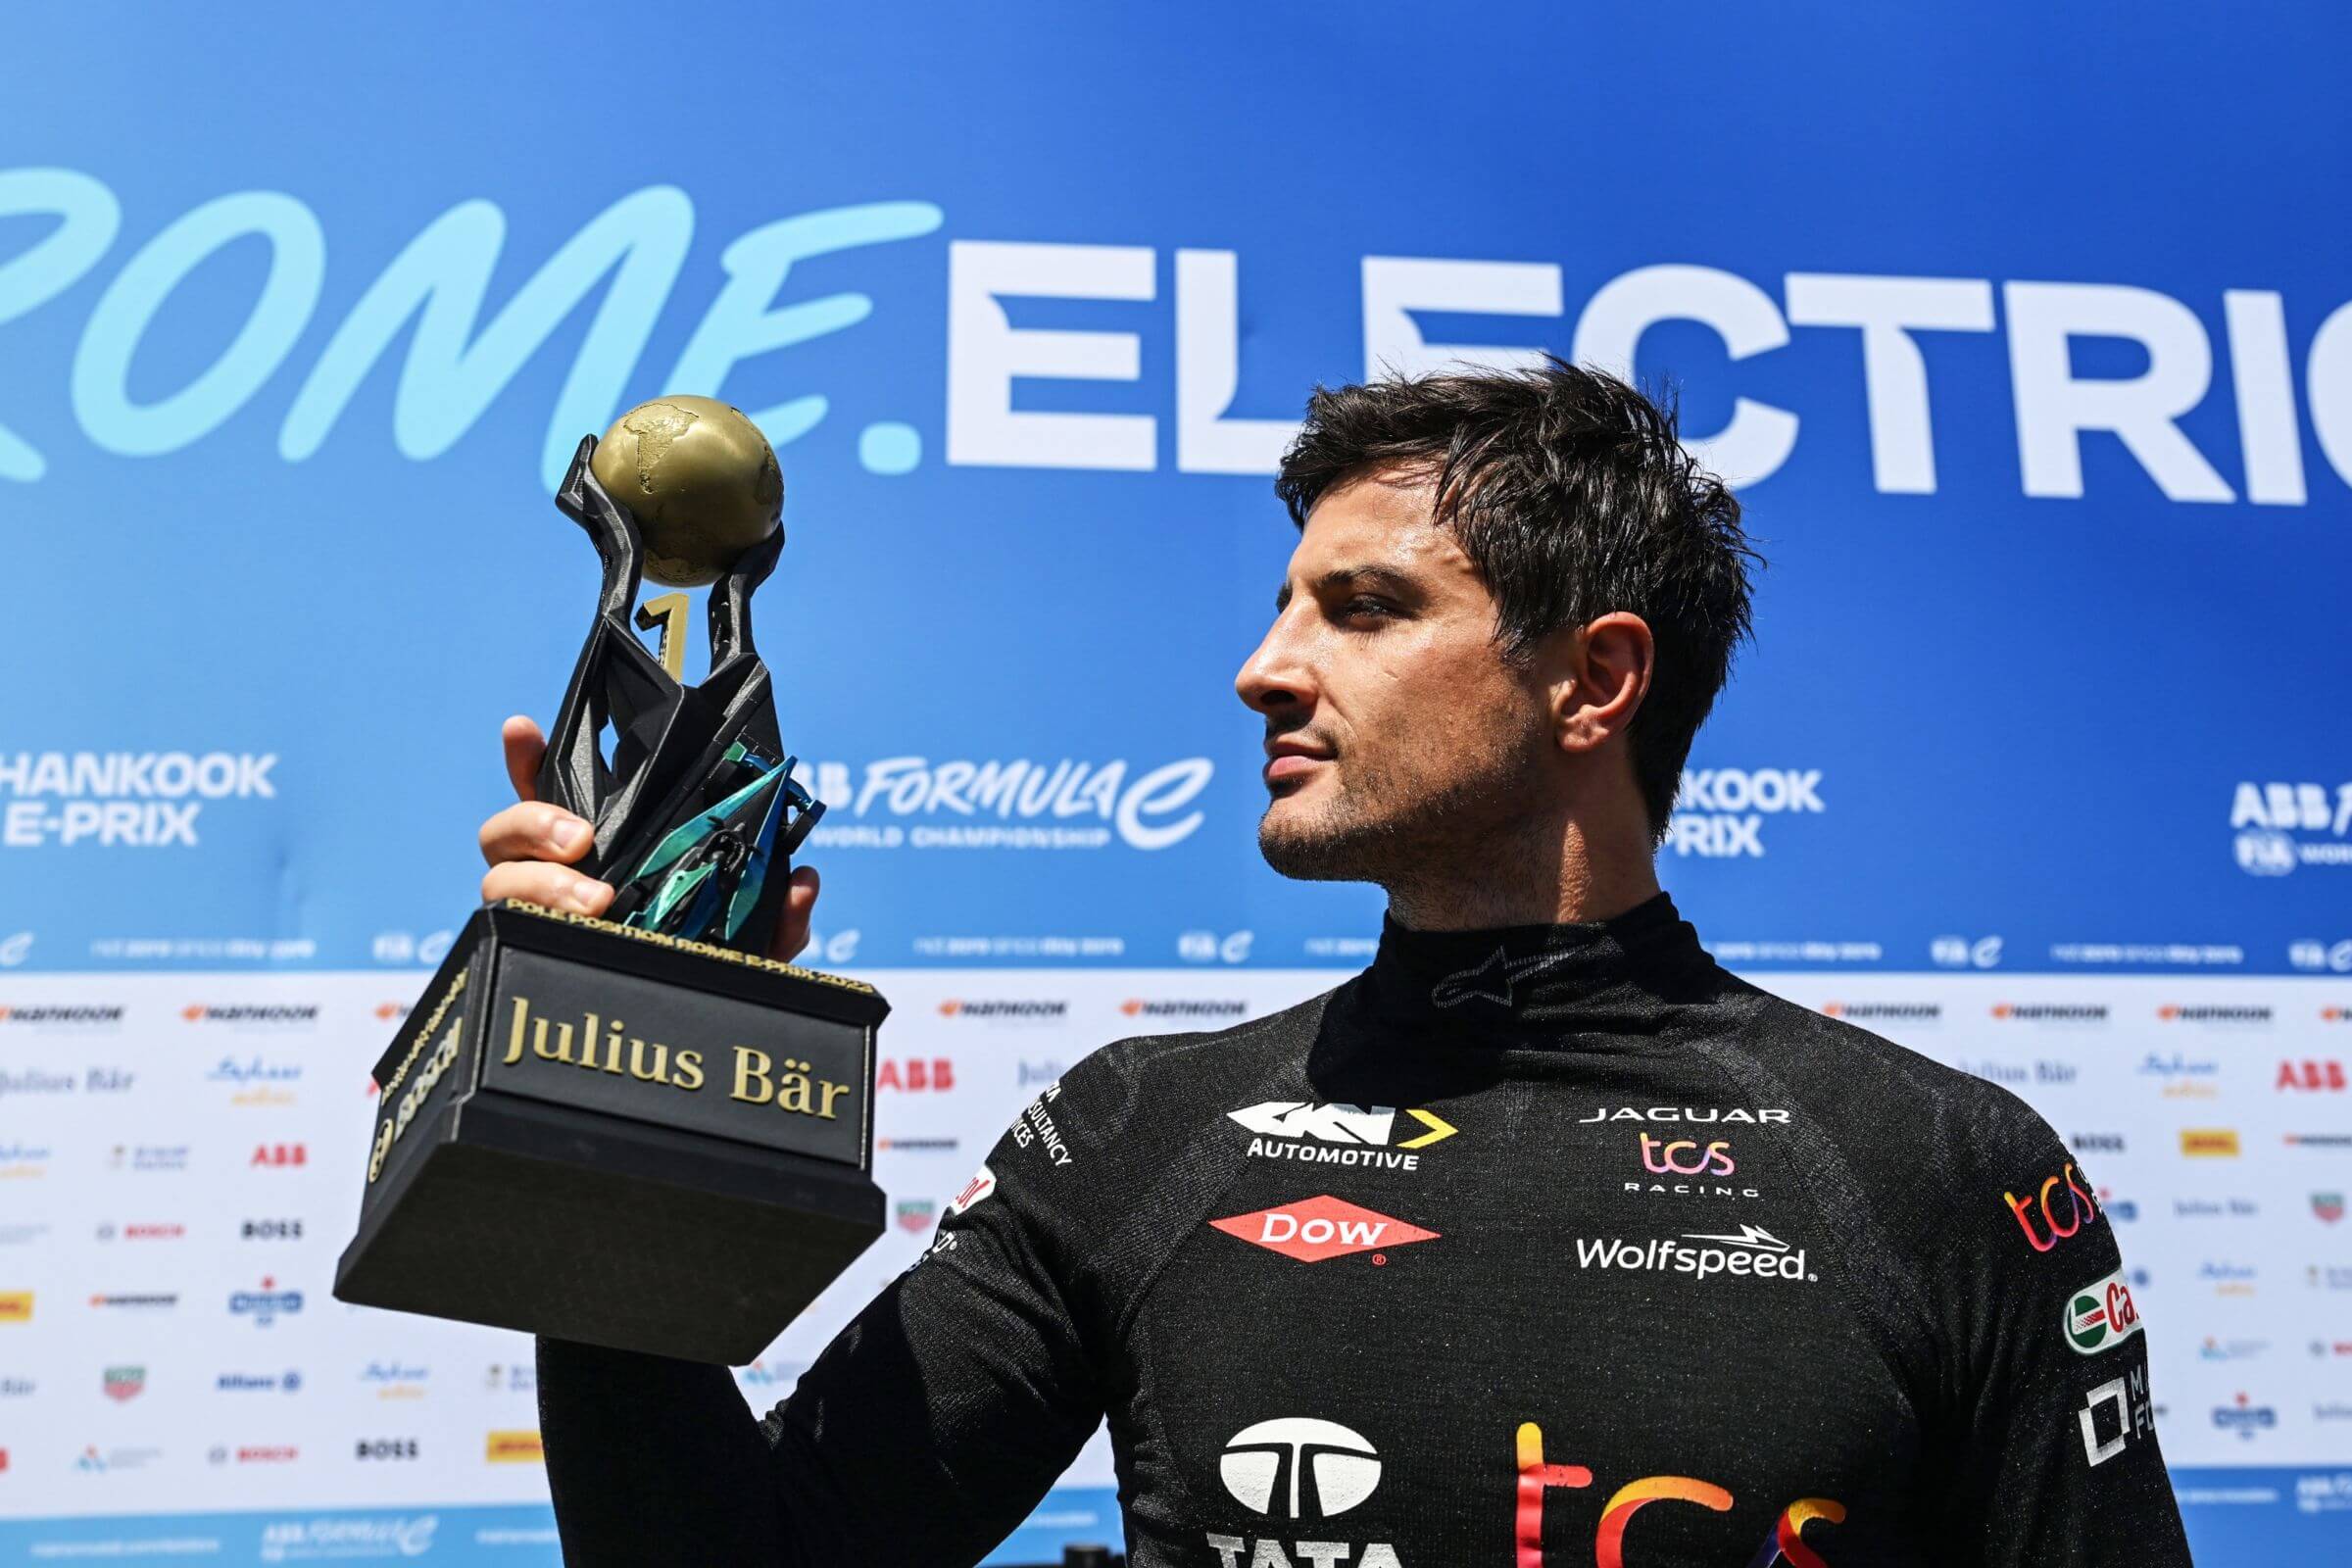 Mitch-Evans-Pole-Position-Trophy-Rome